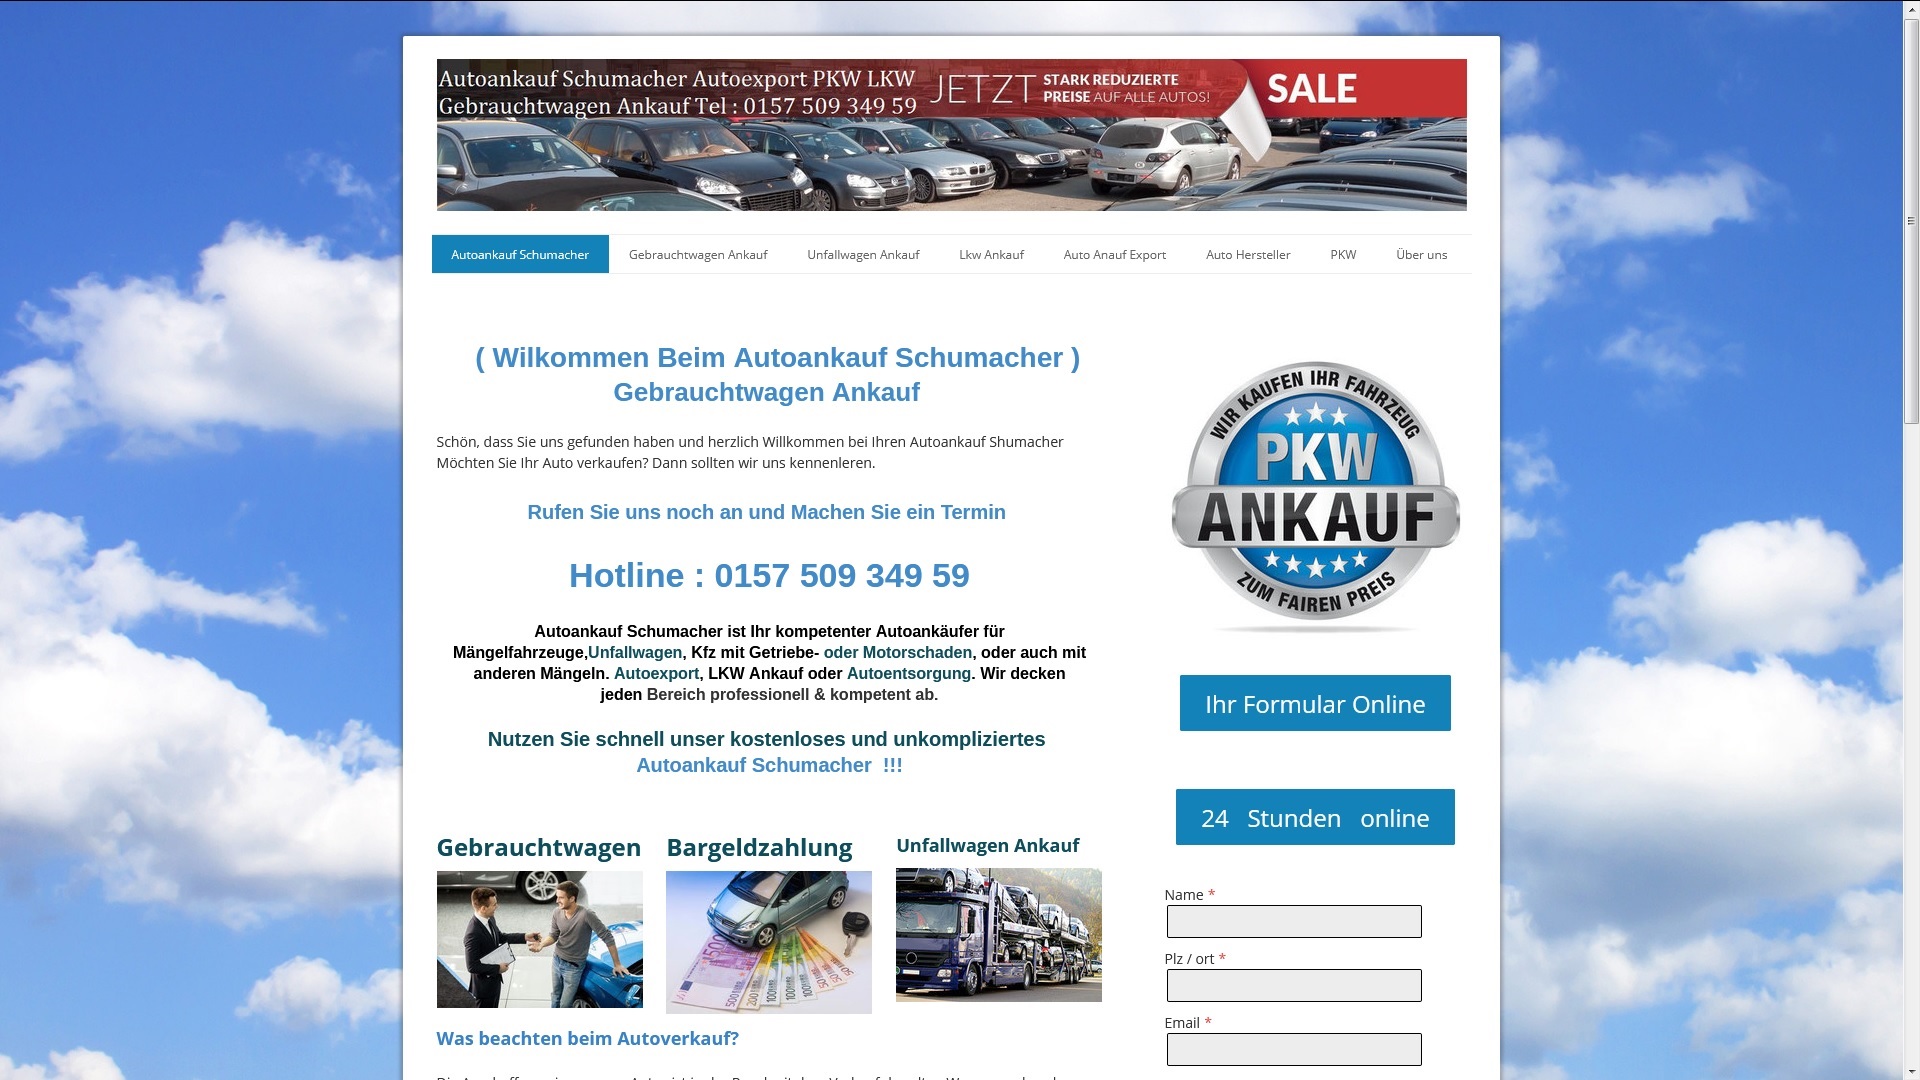 autoankauf schumacher autoankauf gebrauchtwagen ankauf in rostock - Autoankauf Schumacher | Autoankauf Gebrauchtwagen Ankauf in Rostock